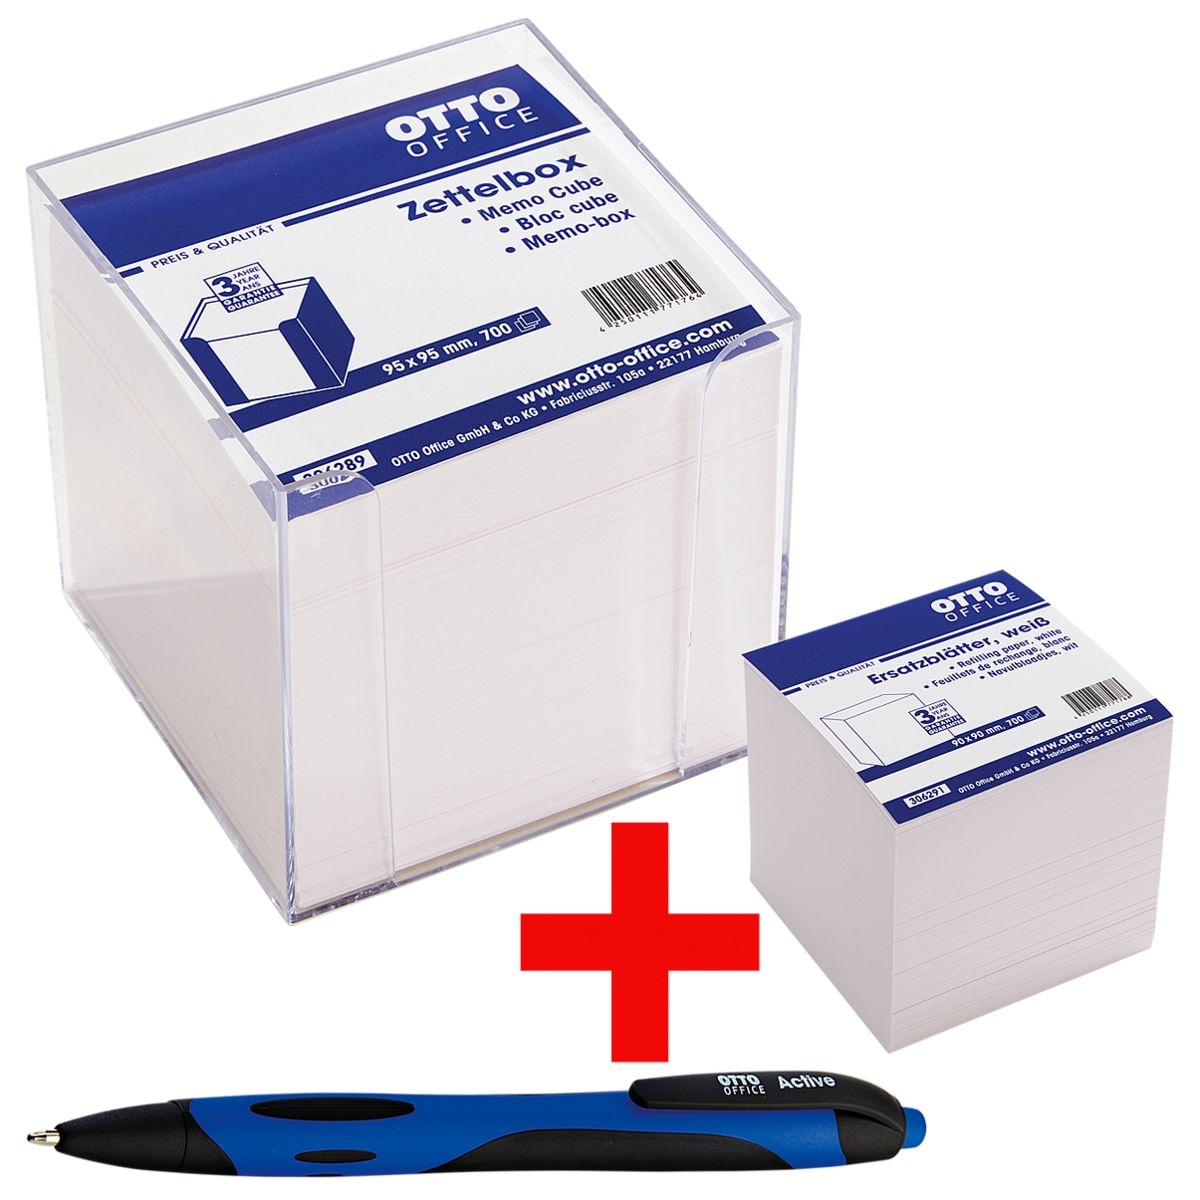 OTTO Office Memobox met wit papier incl. balpen Active en reseveblaadjes voor memobox wit